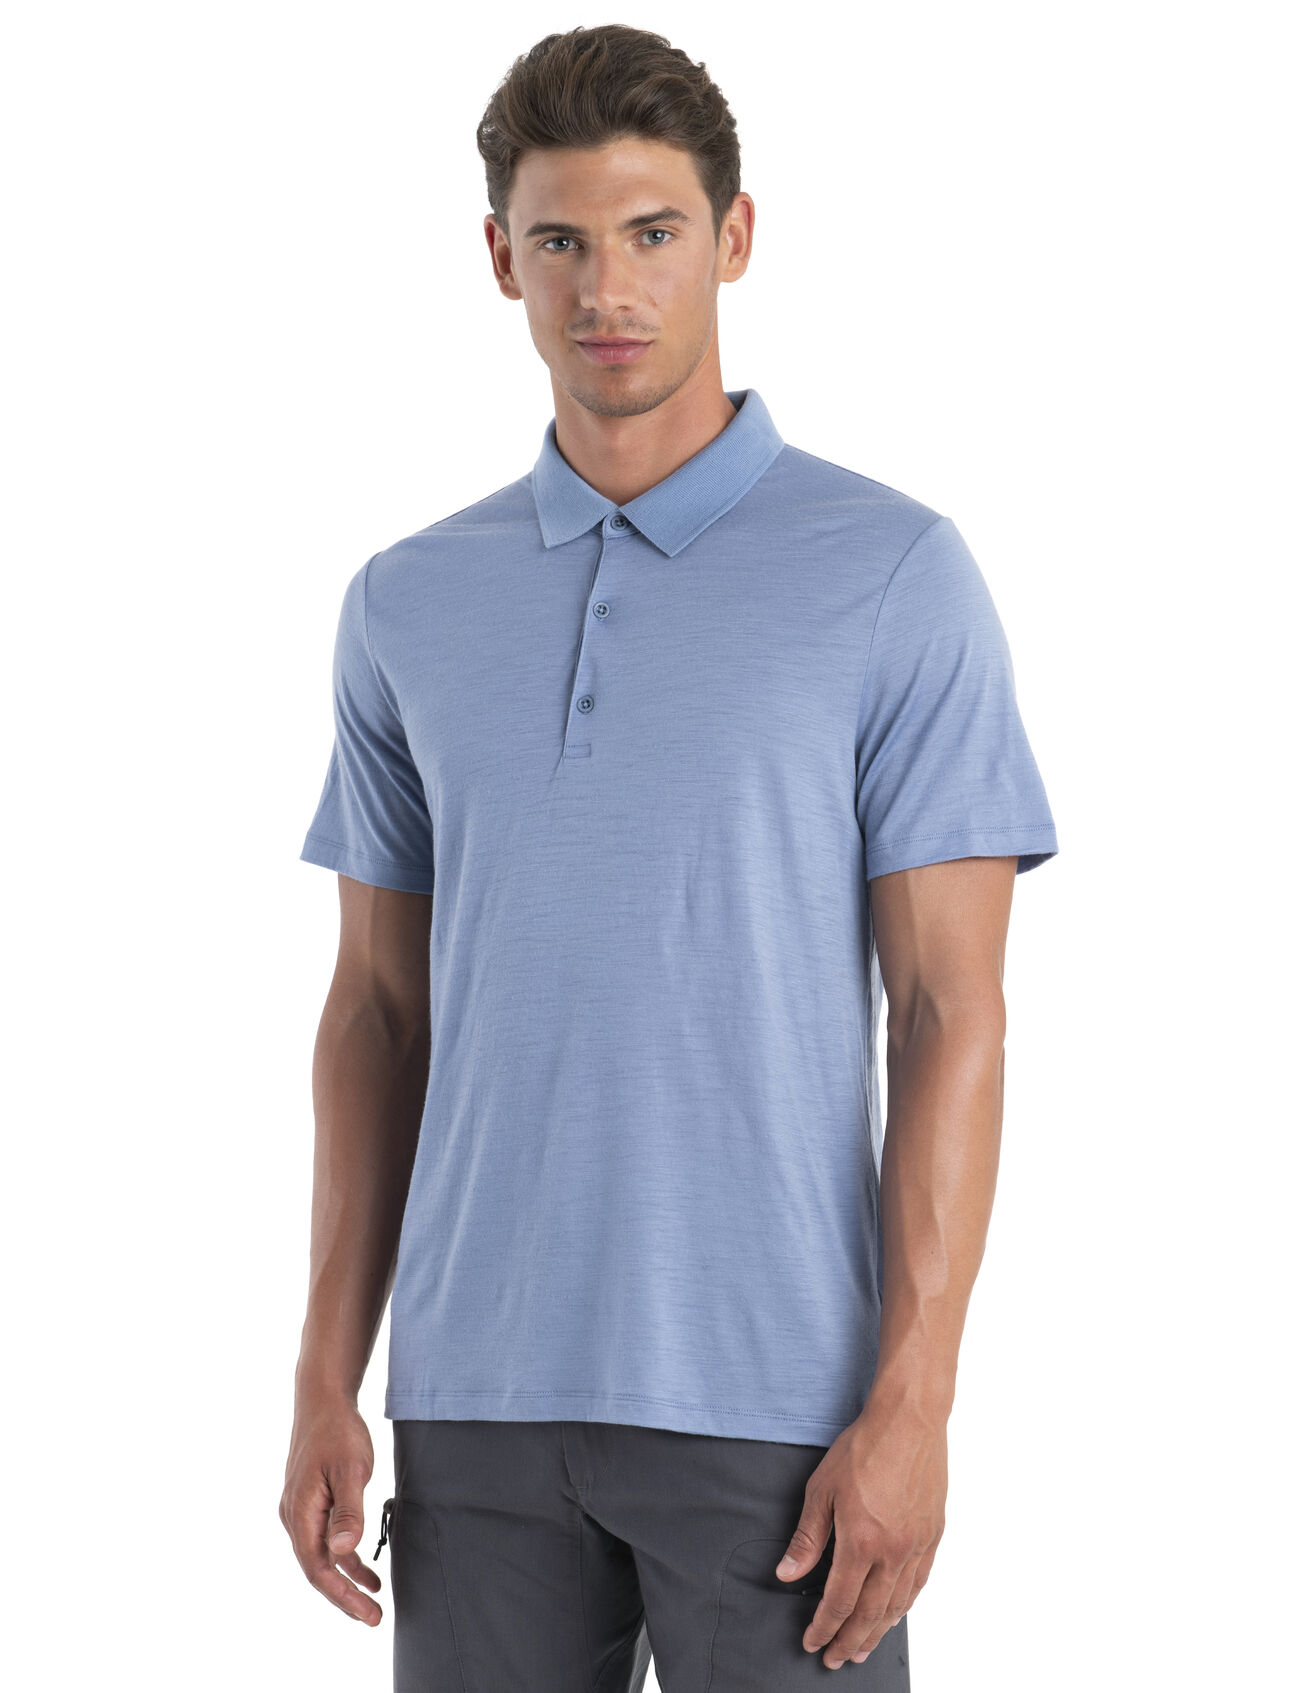 Thin Rib Long-Sleeve Polo Top - Ready to Wear